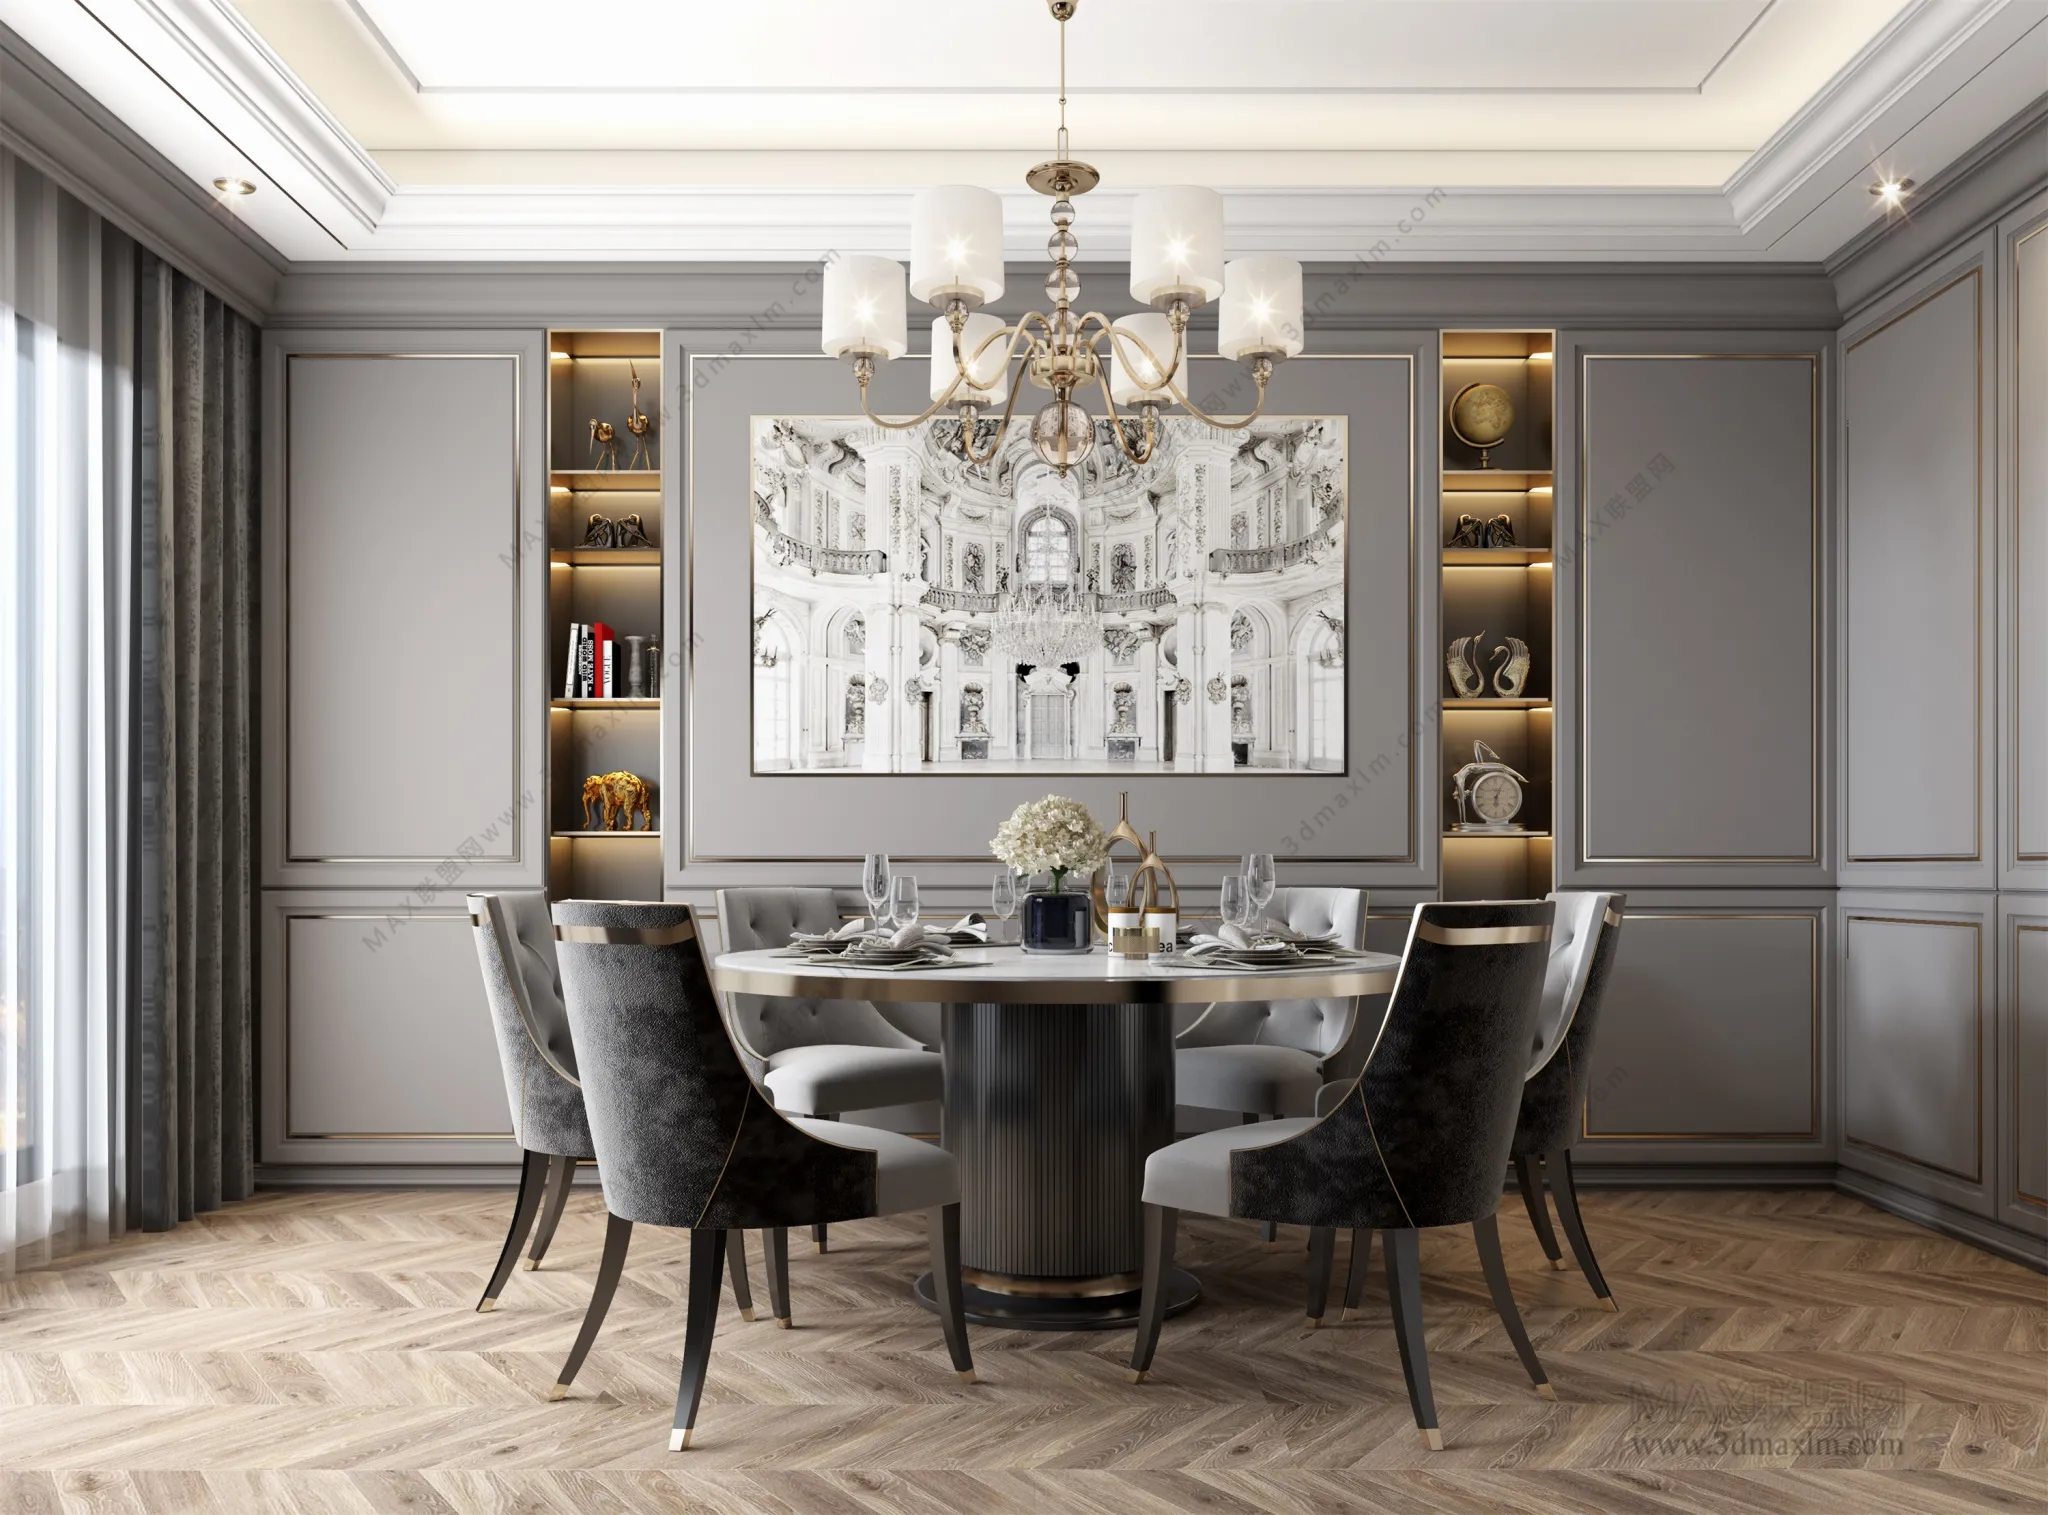 Dining room – Interior Design – European Design – 001